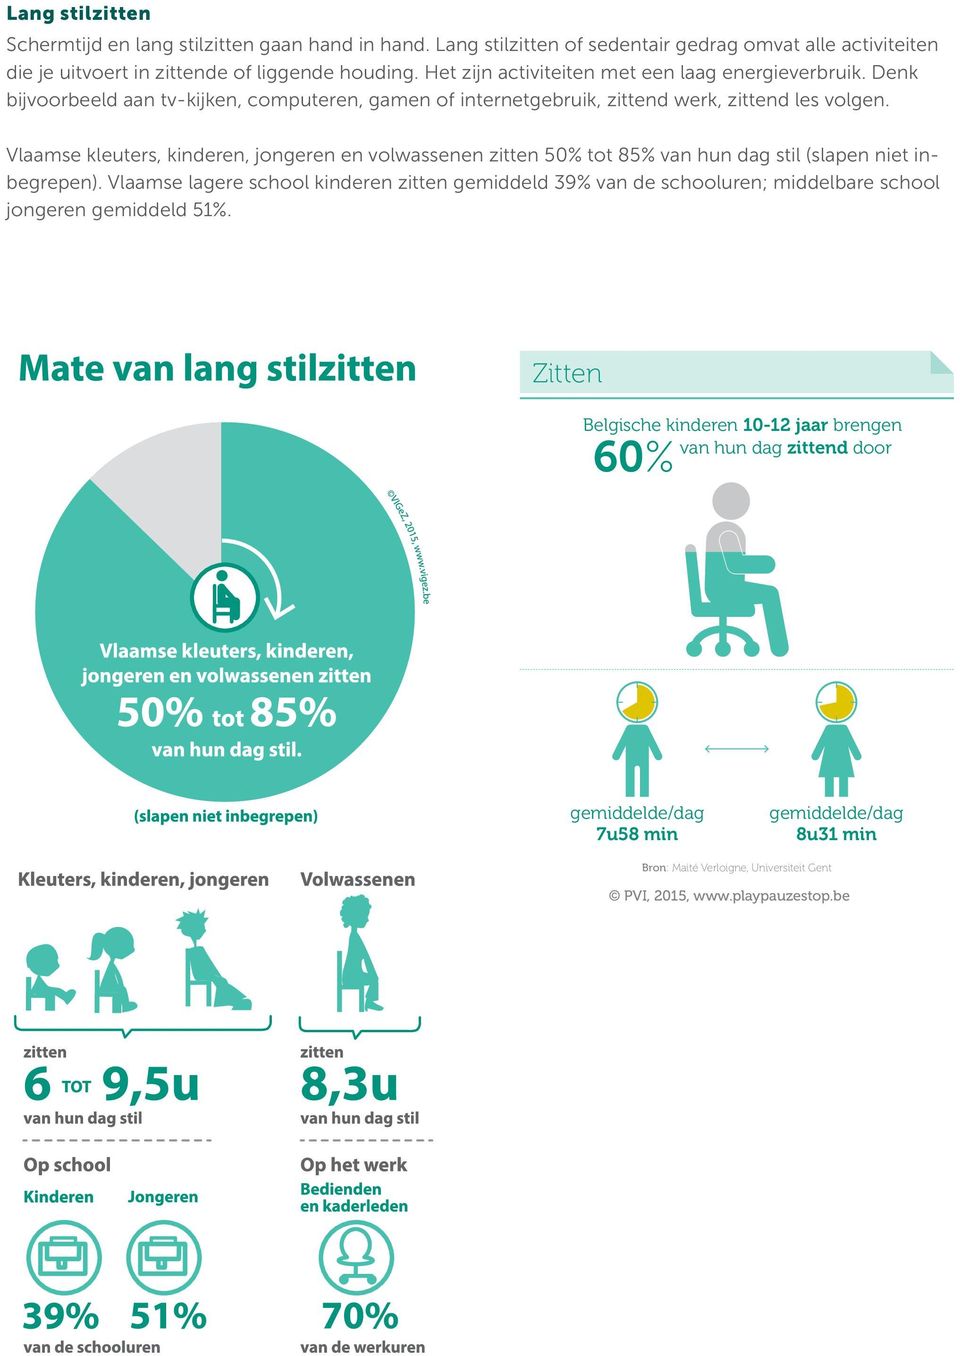 Vlaamse kleuters, kinderen, jongeren en volwassenen zitten 50% tot 85% van hun dag stil (slapen niet inbegrepen).